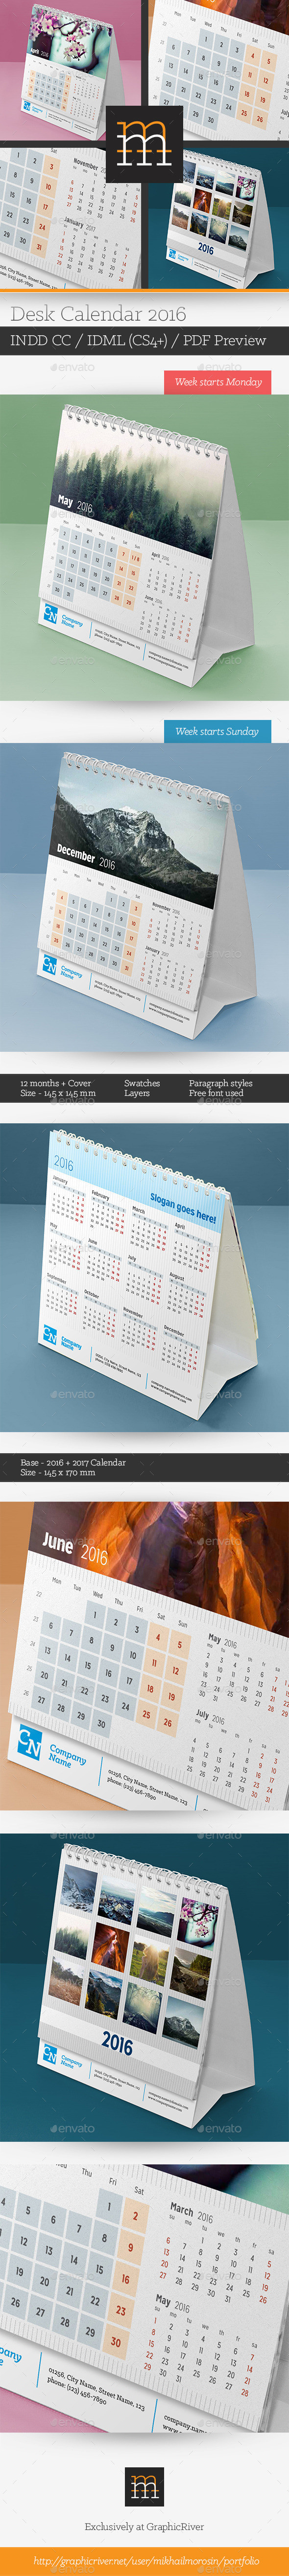 Desk calendar 11  2016 590